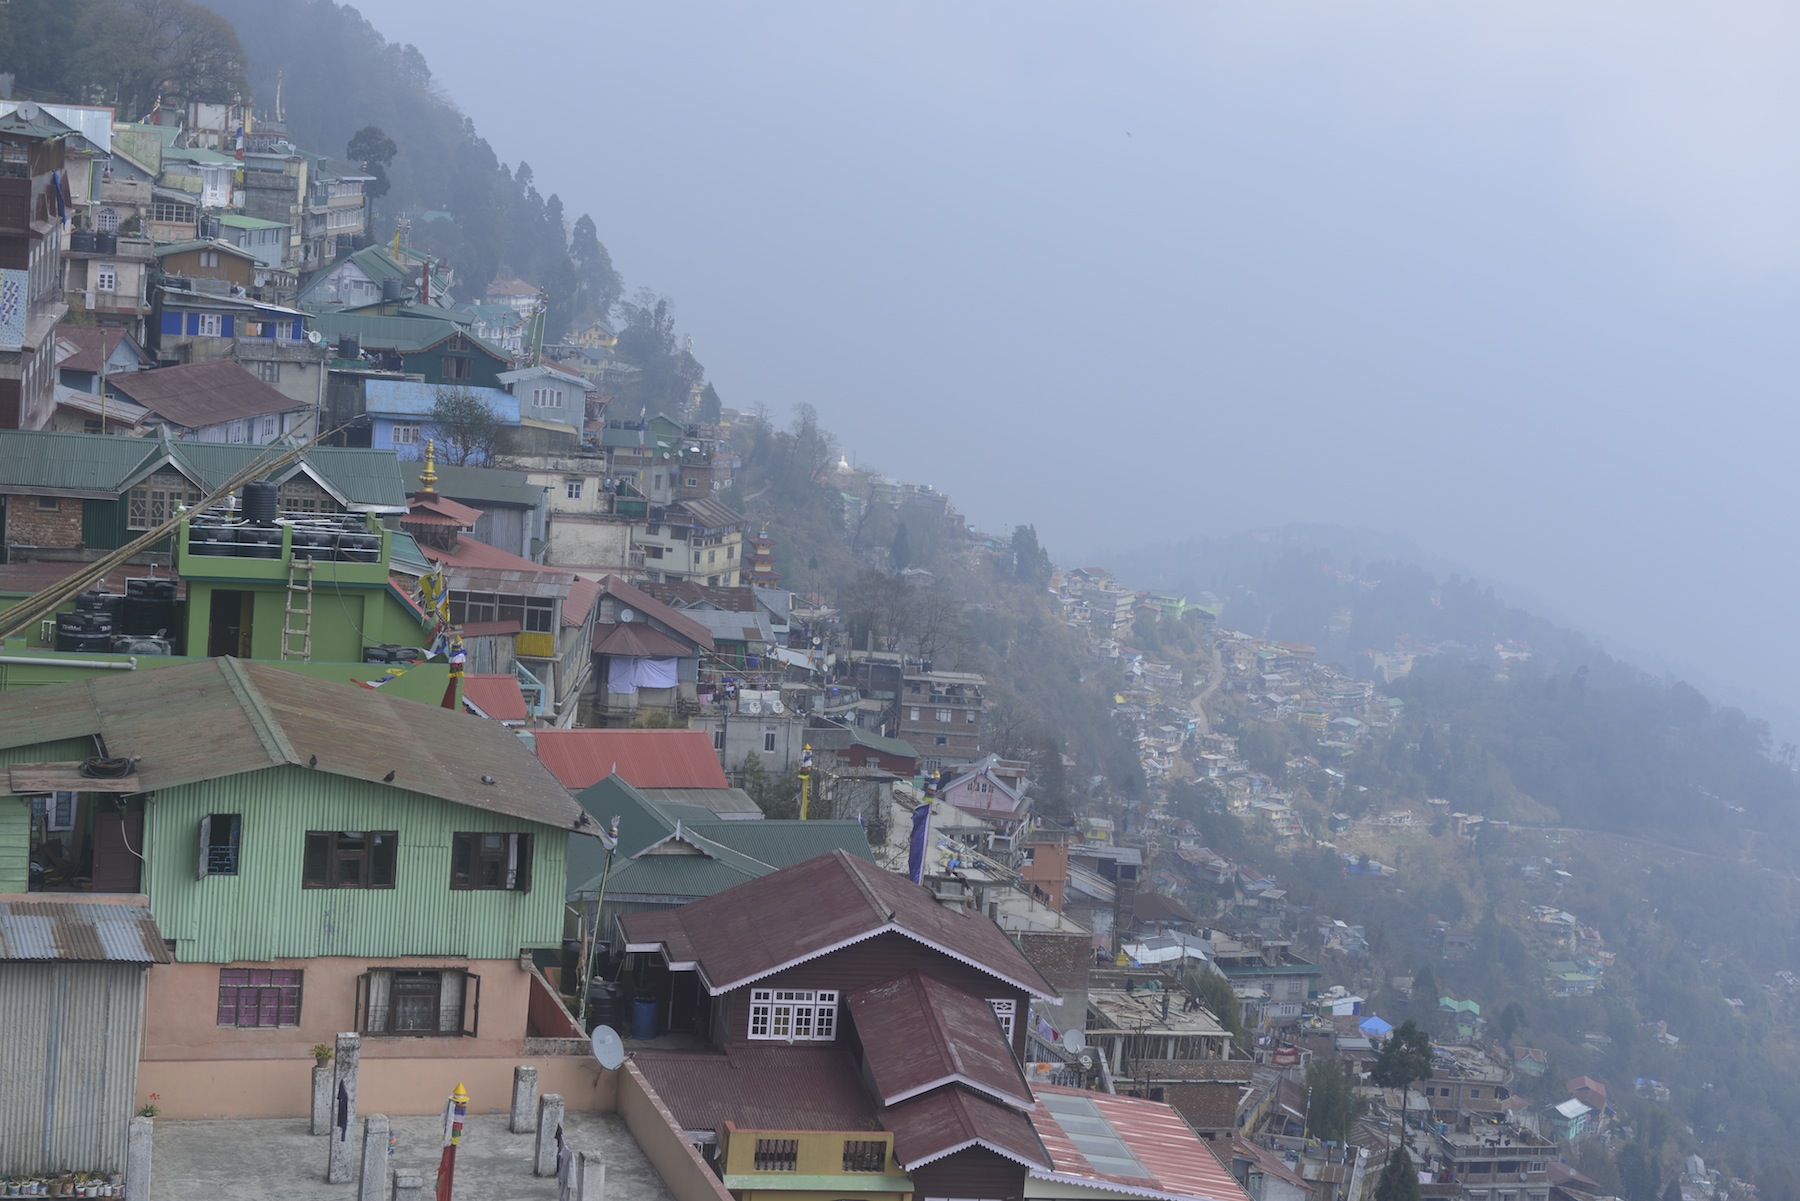 Darjeeling City